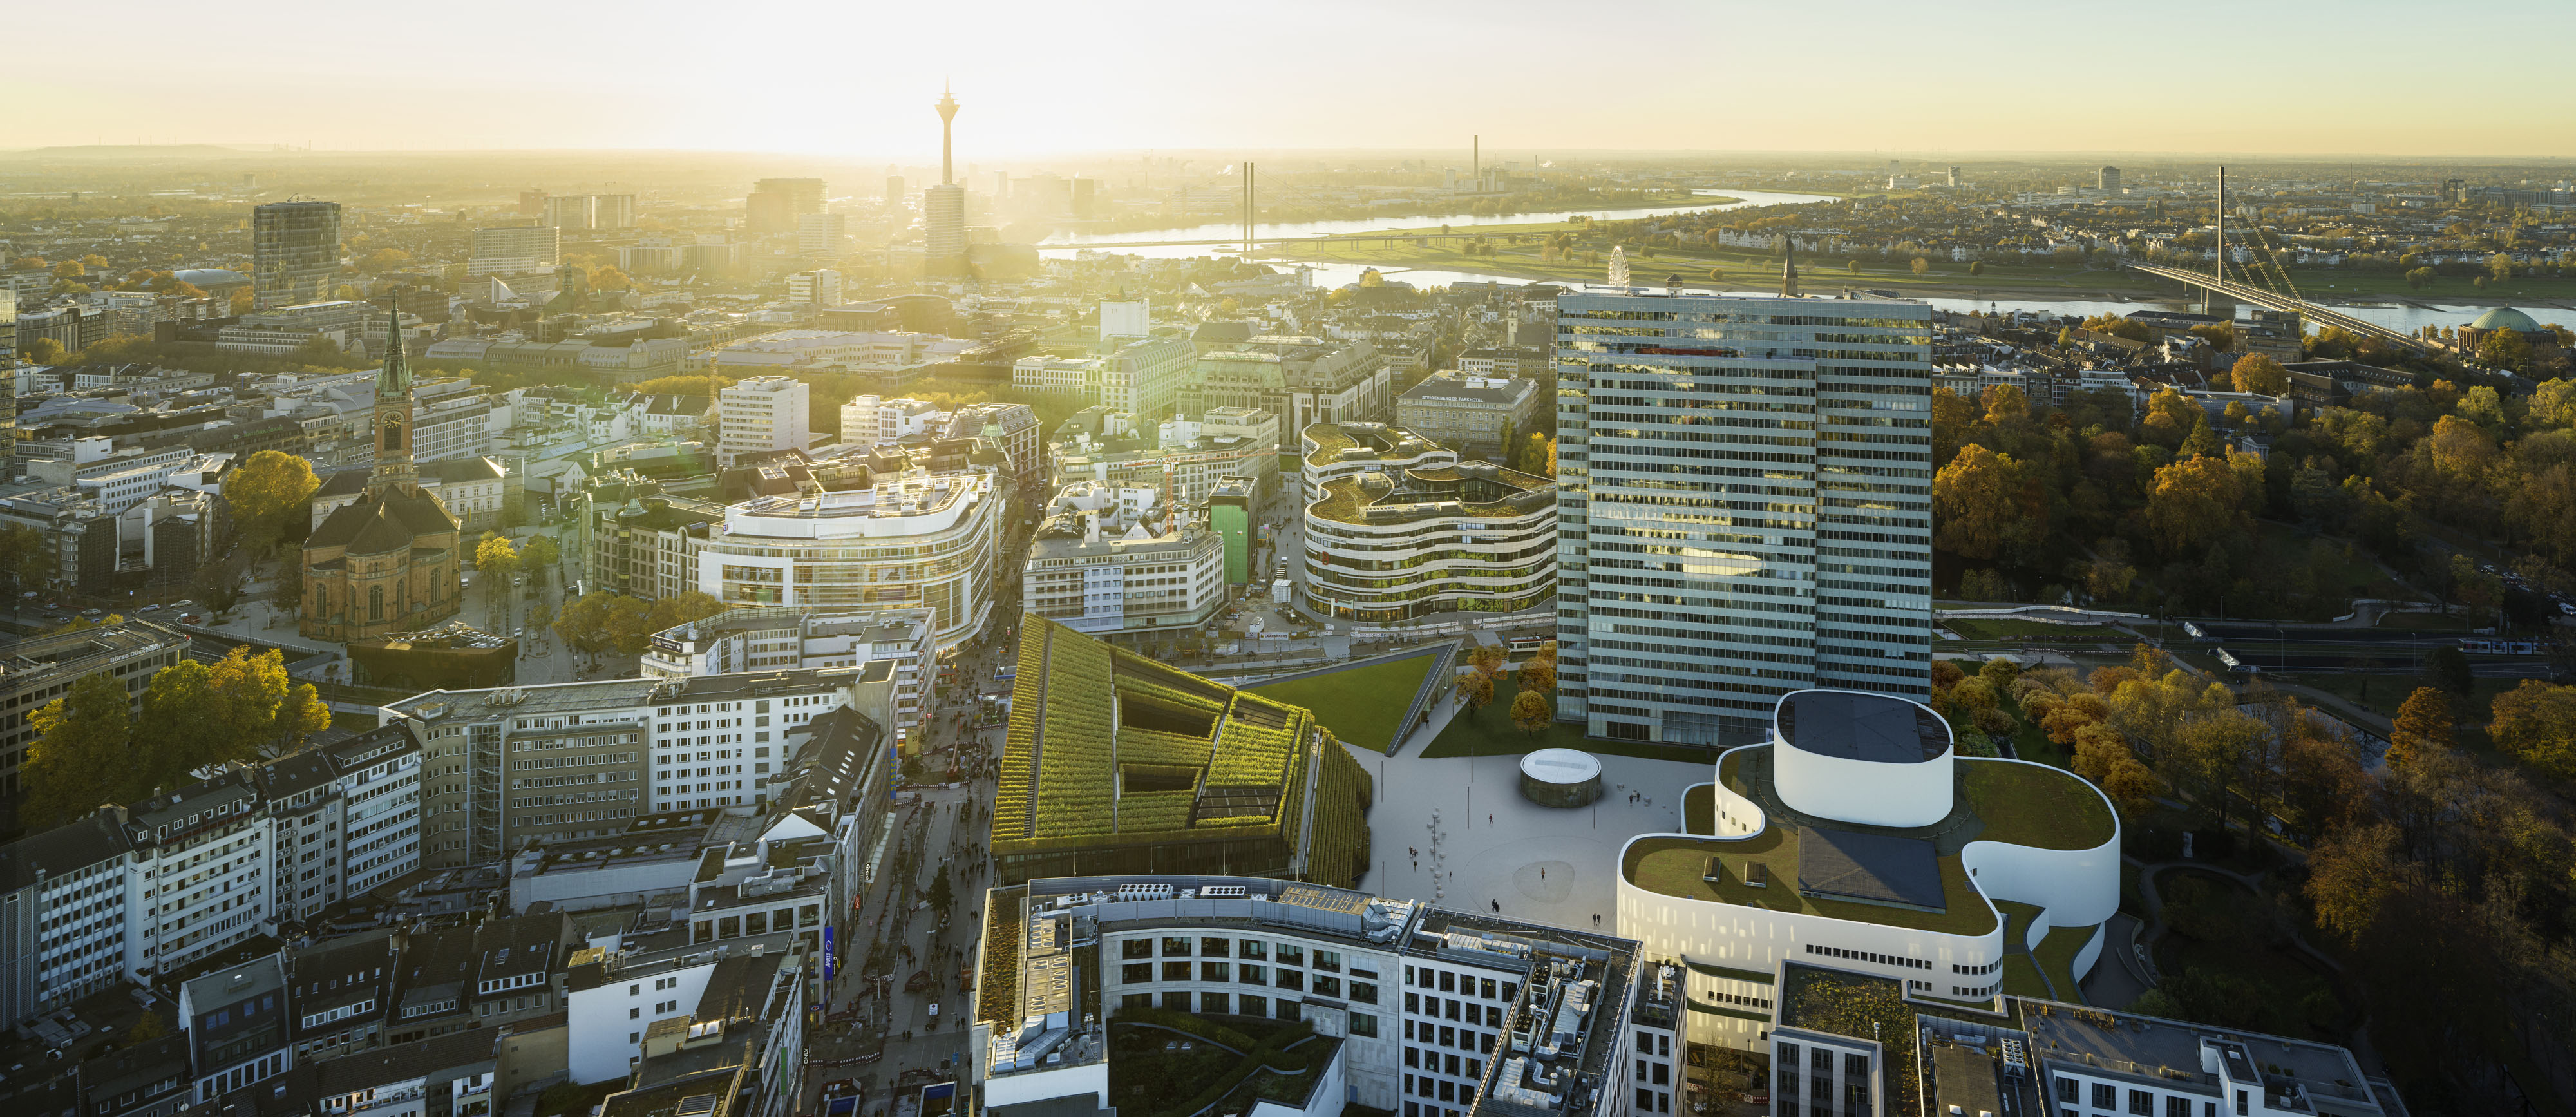 City of Dusseldorf, Office of Economic Development